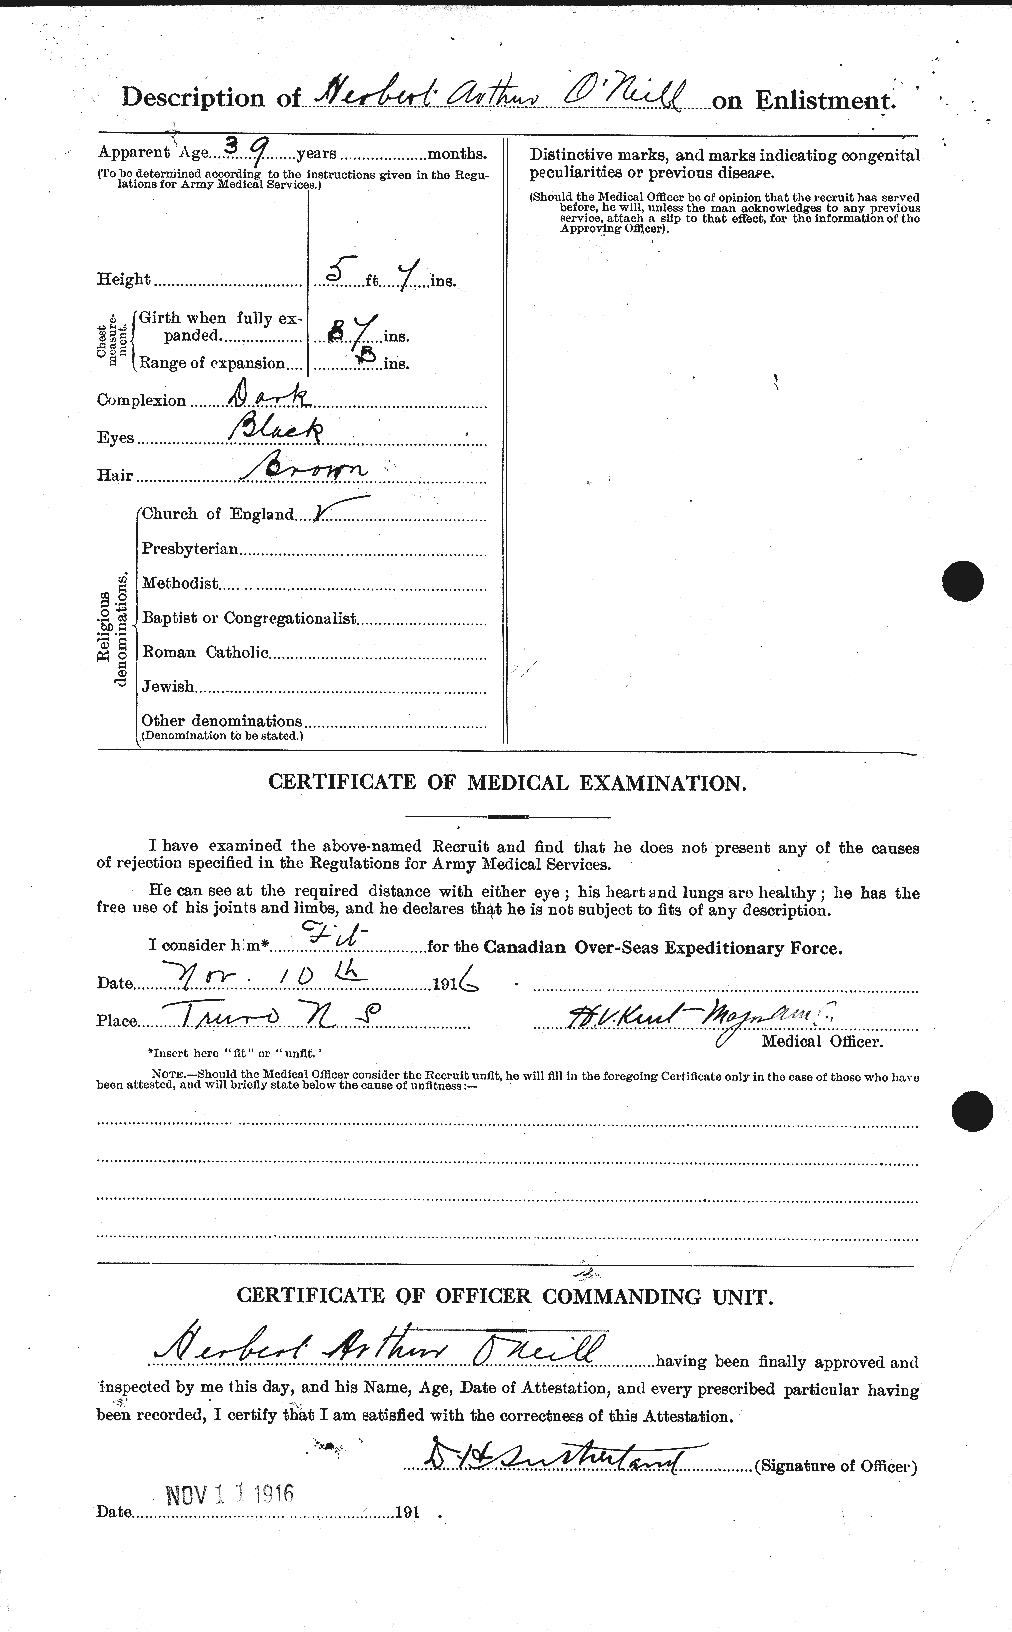 Dossiers du Personnel de la Première Guerre mondiale - CEC 557753b